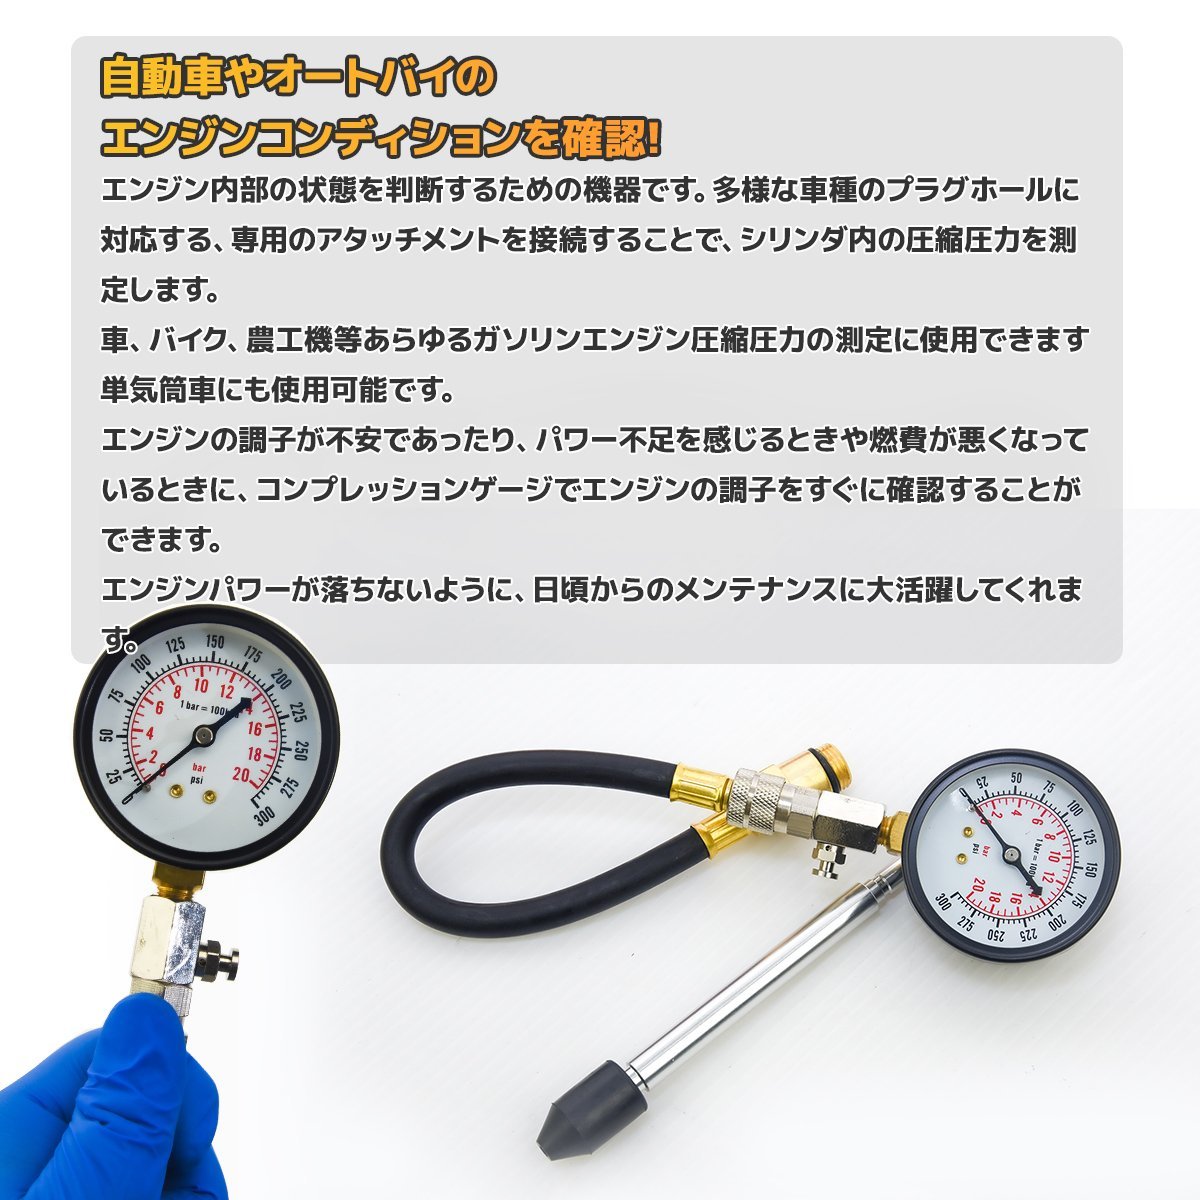 # free shipping # compression gauge ① old car bike engine measurement range 0-300psi compression pressure measurement 